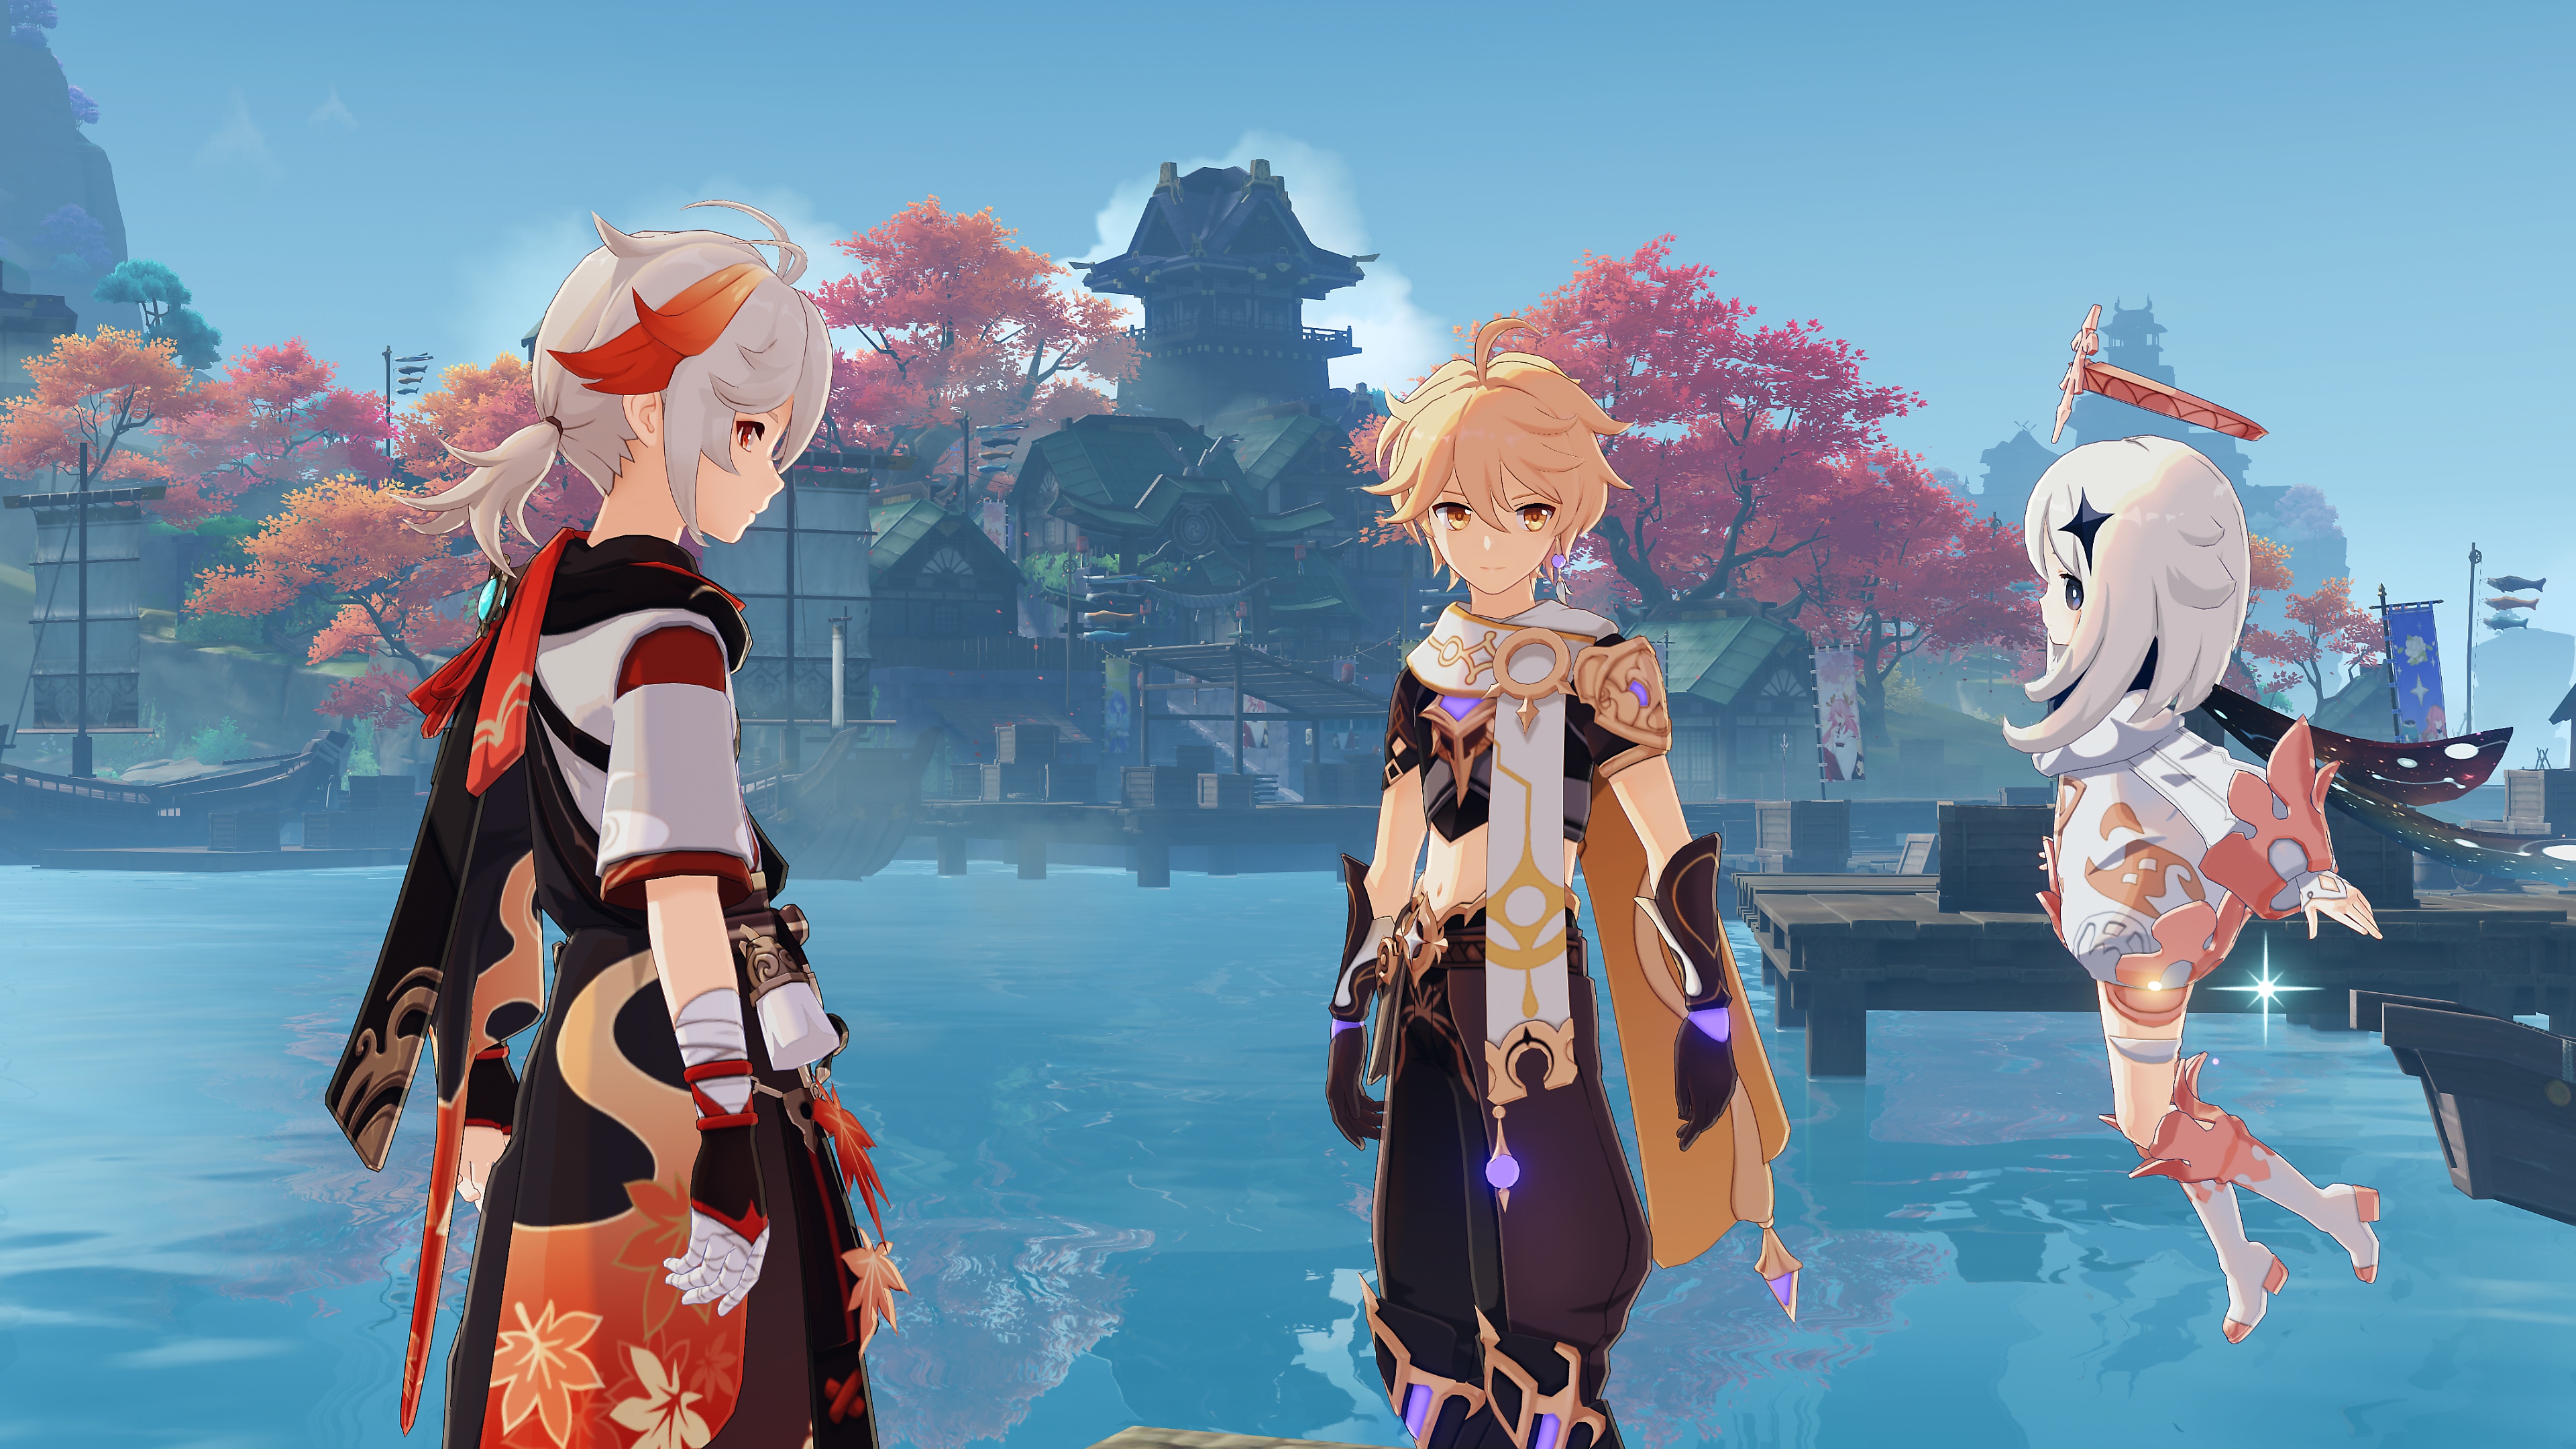 Impacto de GenShin: Captura de pantalla de Actualización 2.6 que muestra tres personajes platicando